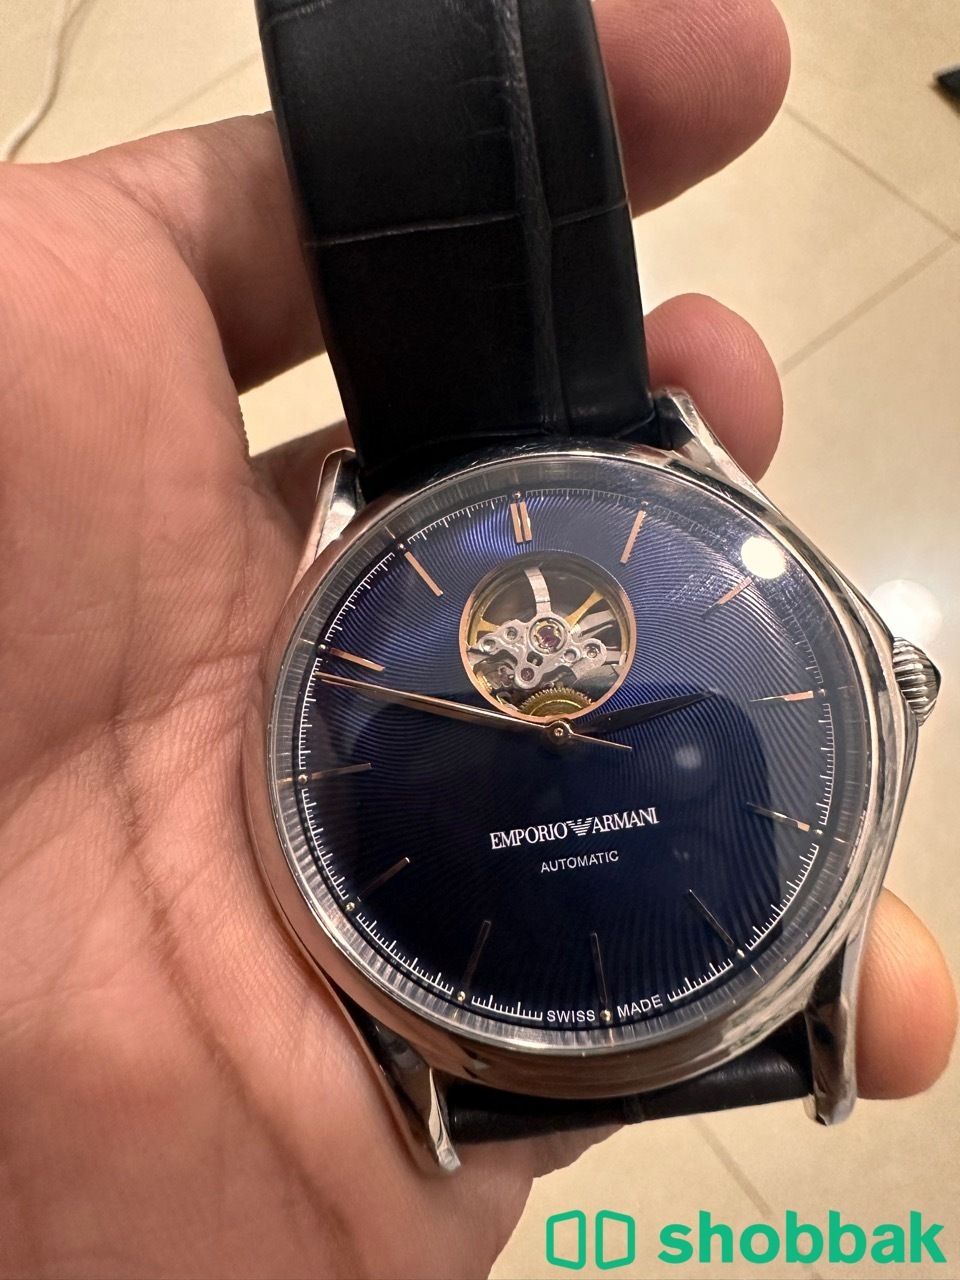 ساعة امبوريو ارماني اوتوماتيك - Emporio Armani Automatic Watch شباك السعودية